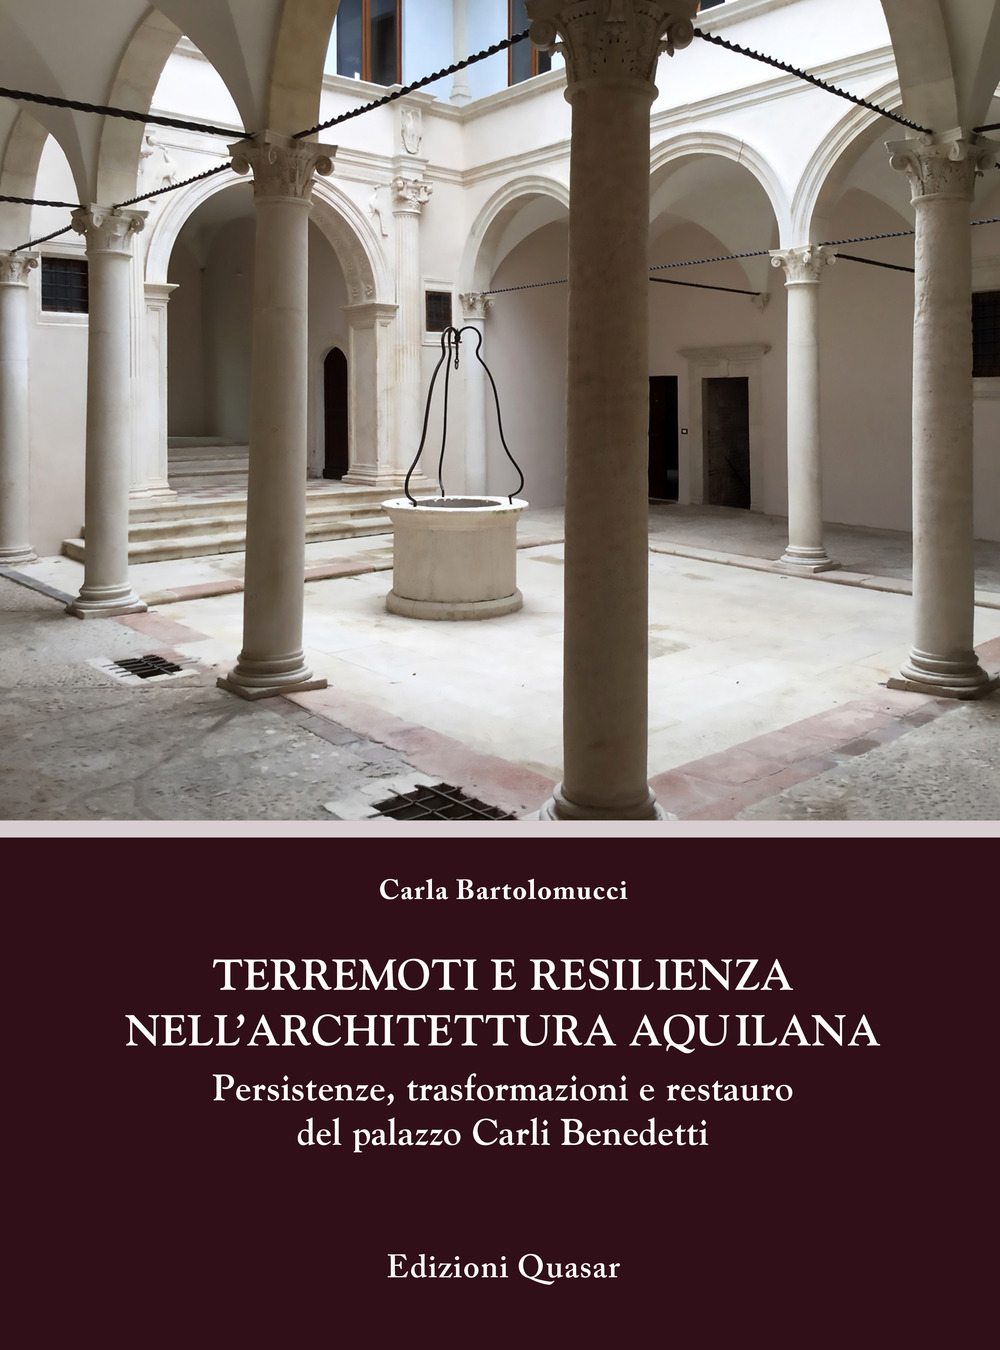 Terremoti e resilienza nell'architettura aquilana. Persistenze, trasformazioni e restauro del palazzo Carli Benedetti